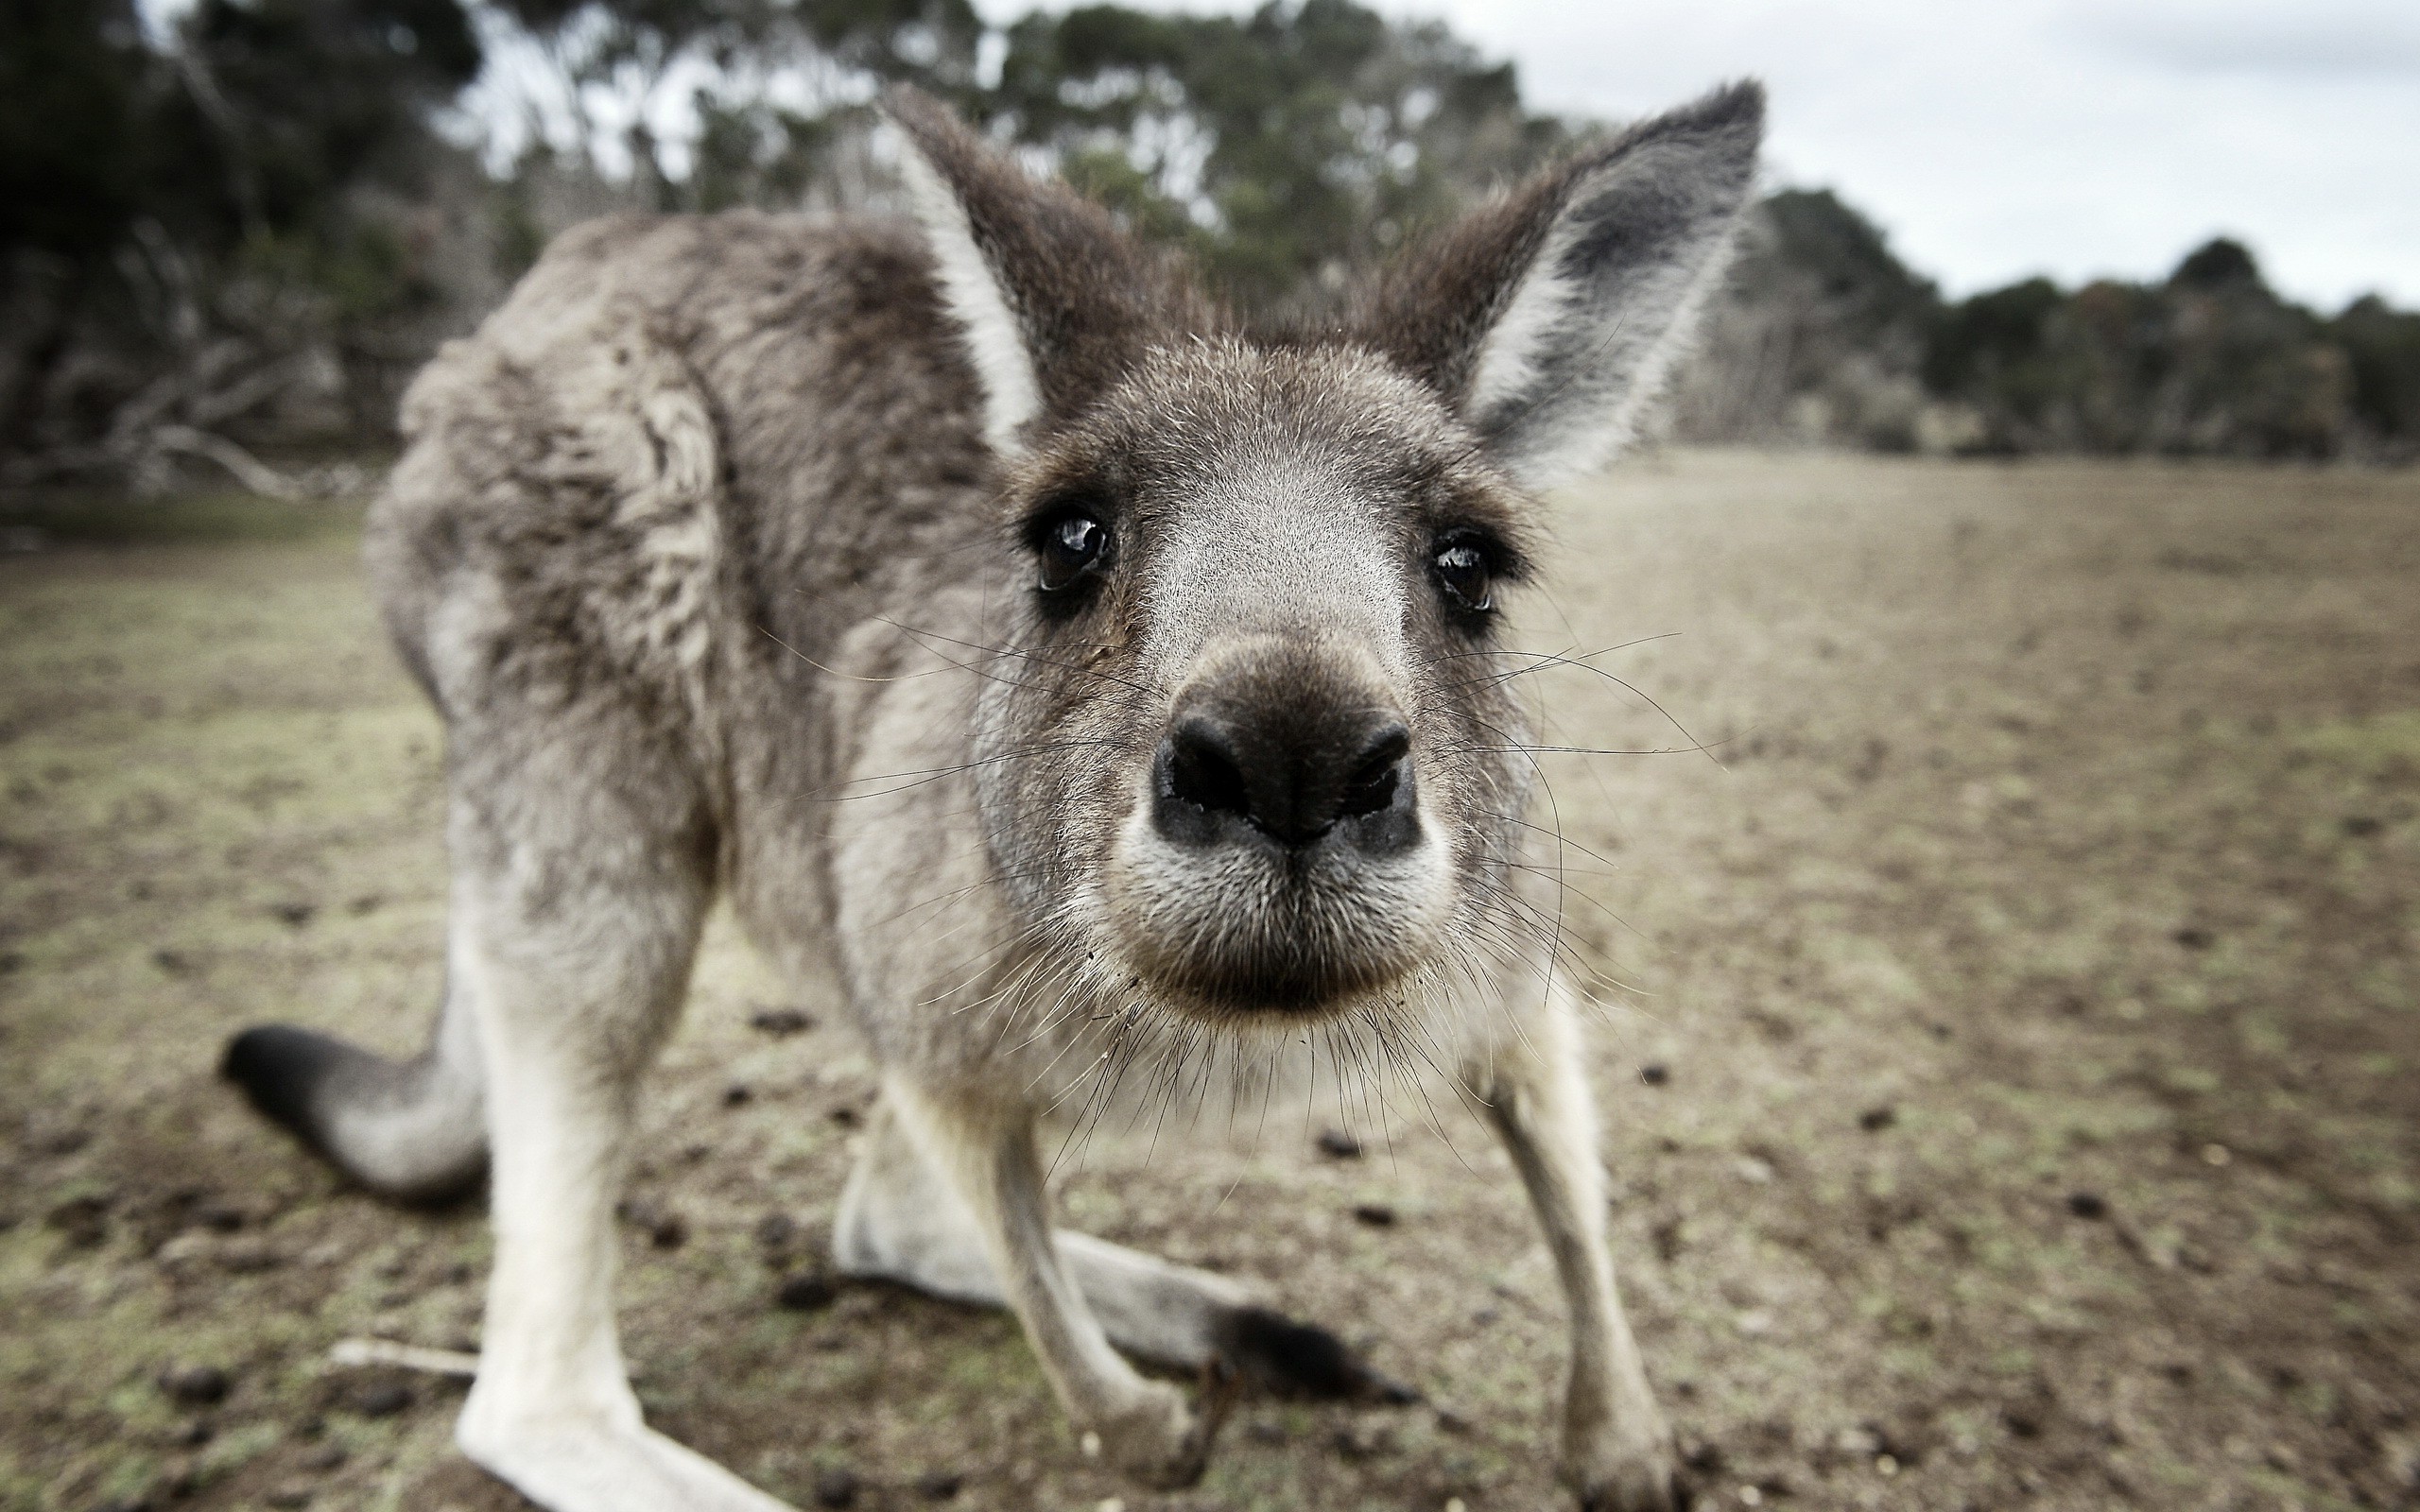 kangaroo close up